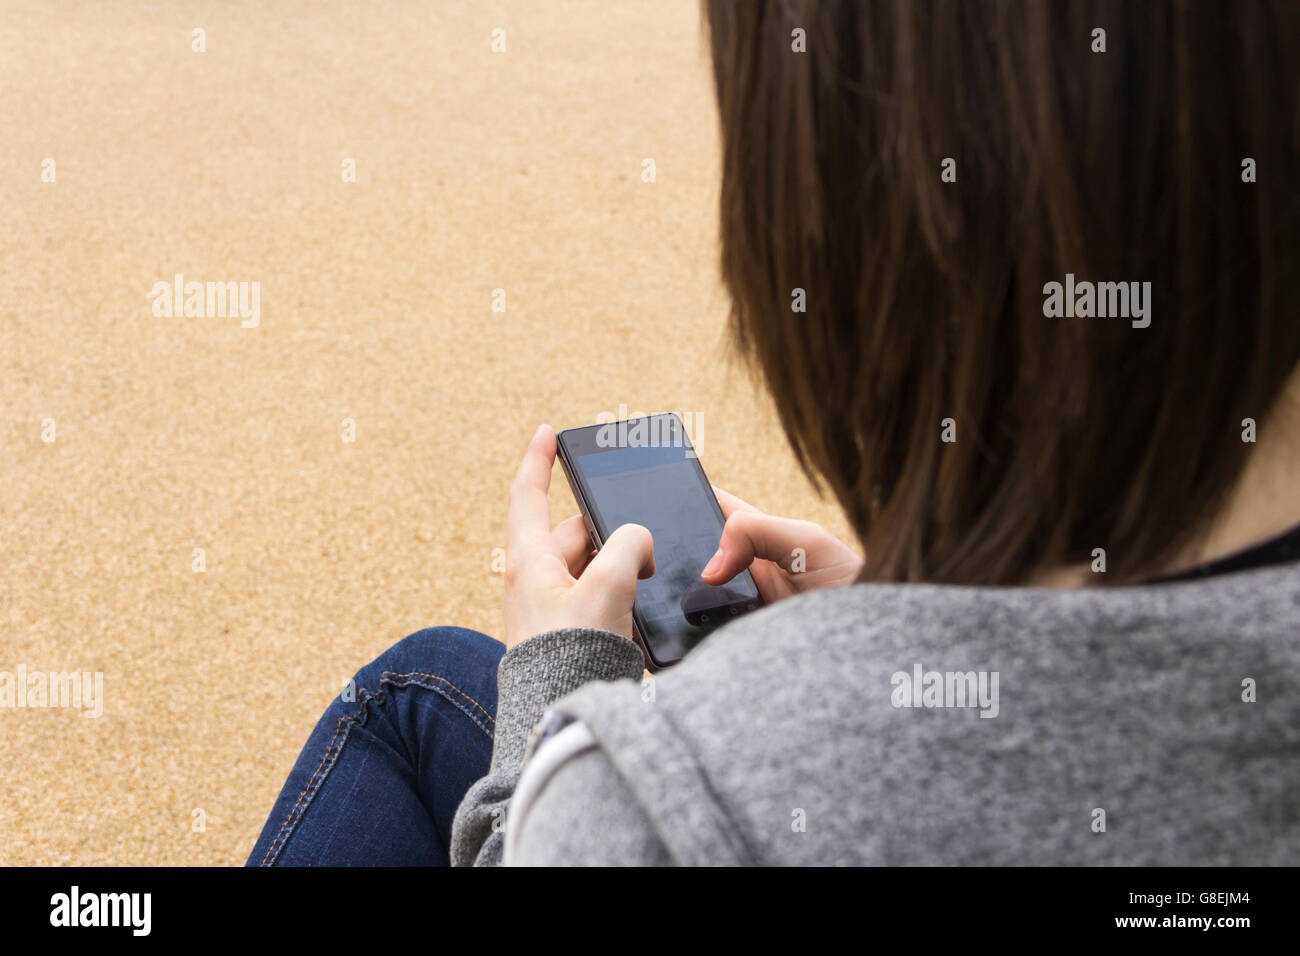 Junge Erwachsene oder späten Teens Frau sitzend, über die Schulter, SMS oder sonst mit ihrem Smartphone gesehen. Fokus liegt auf Telefon. Stockfoto